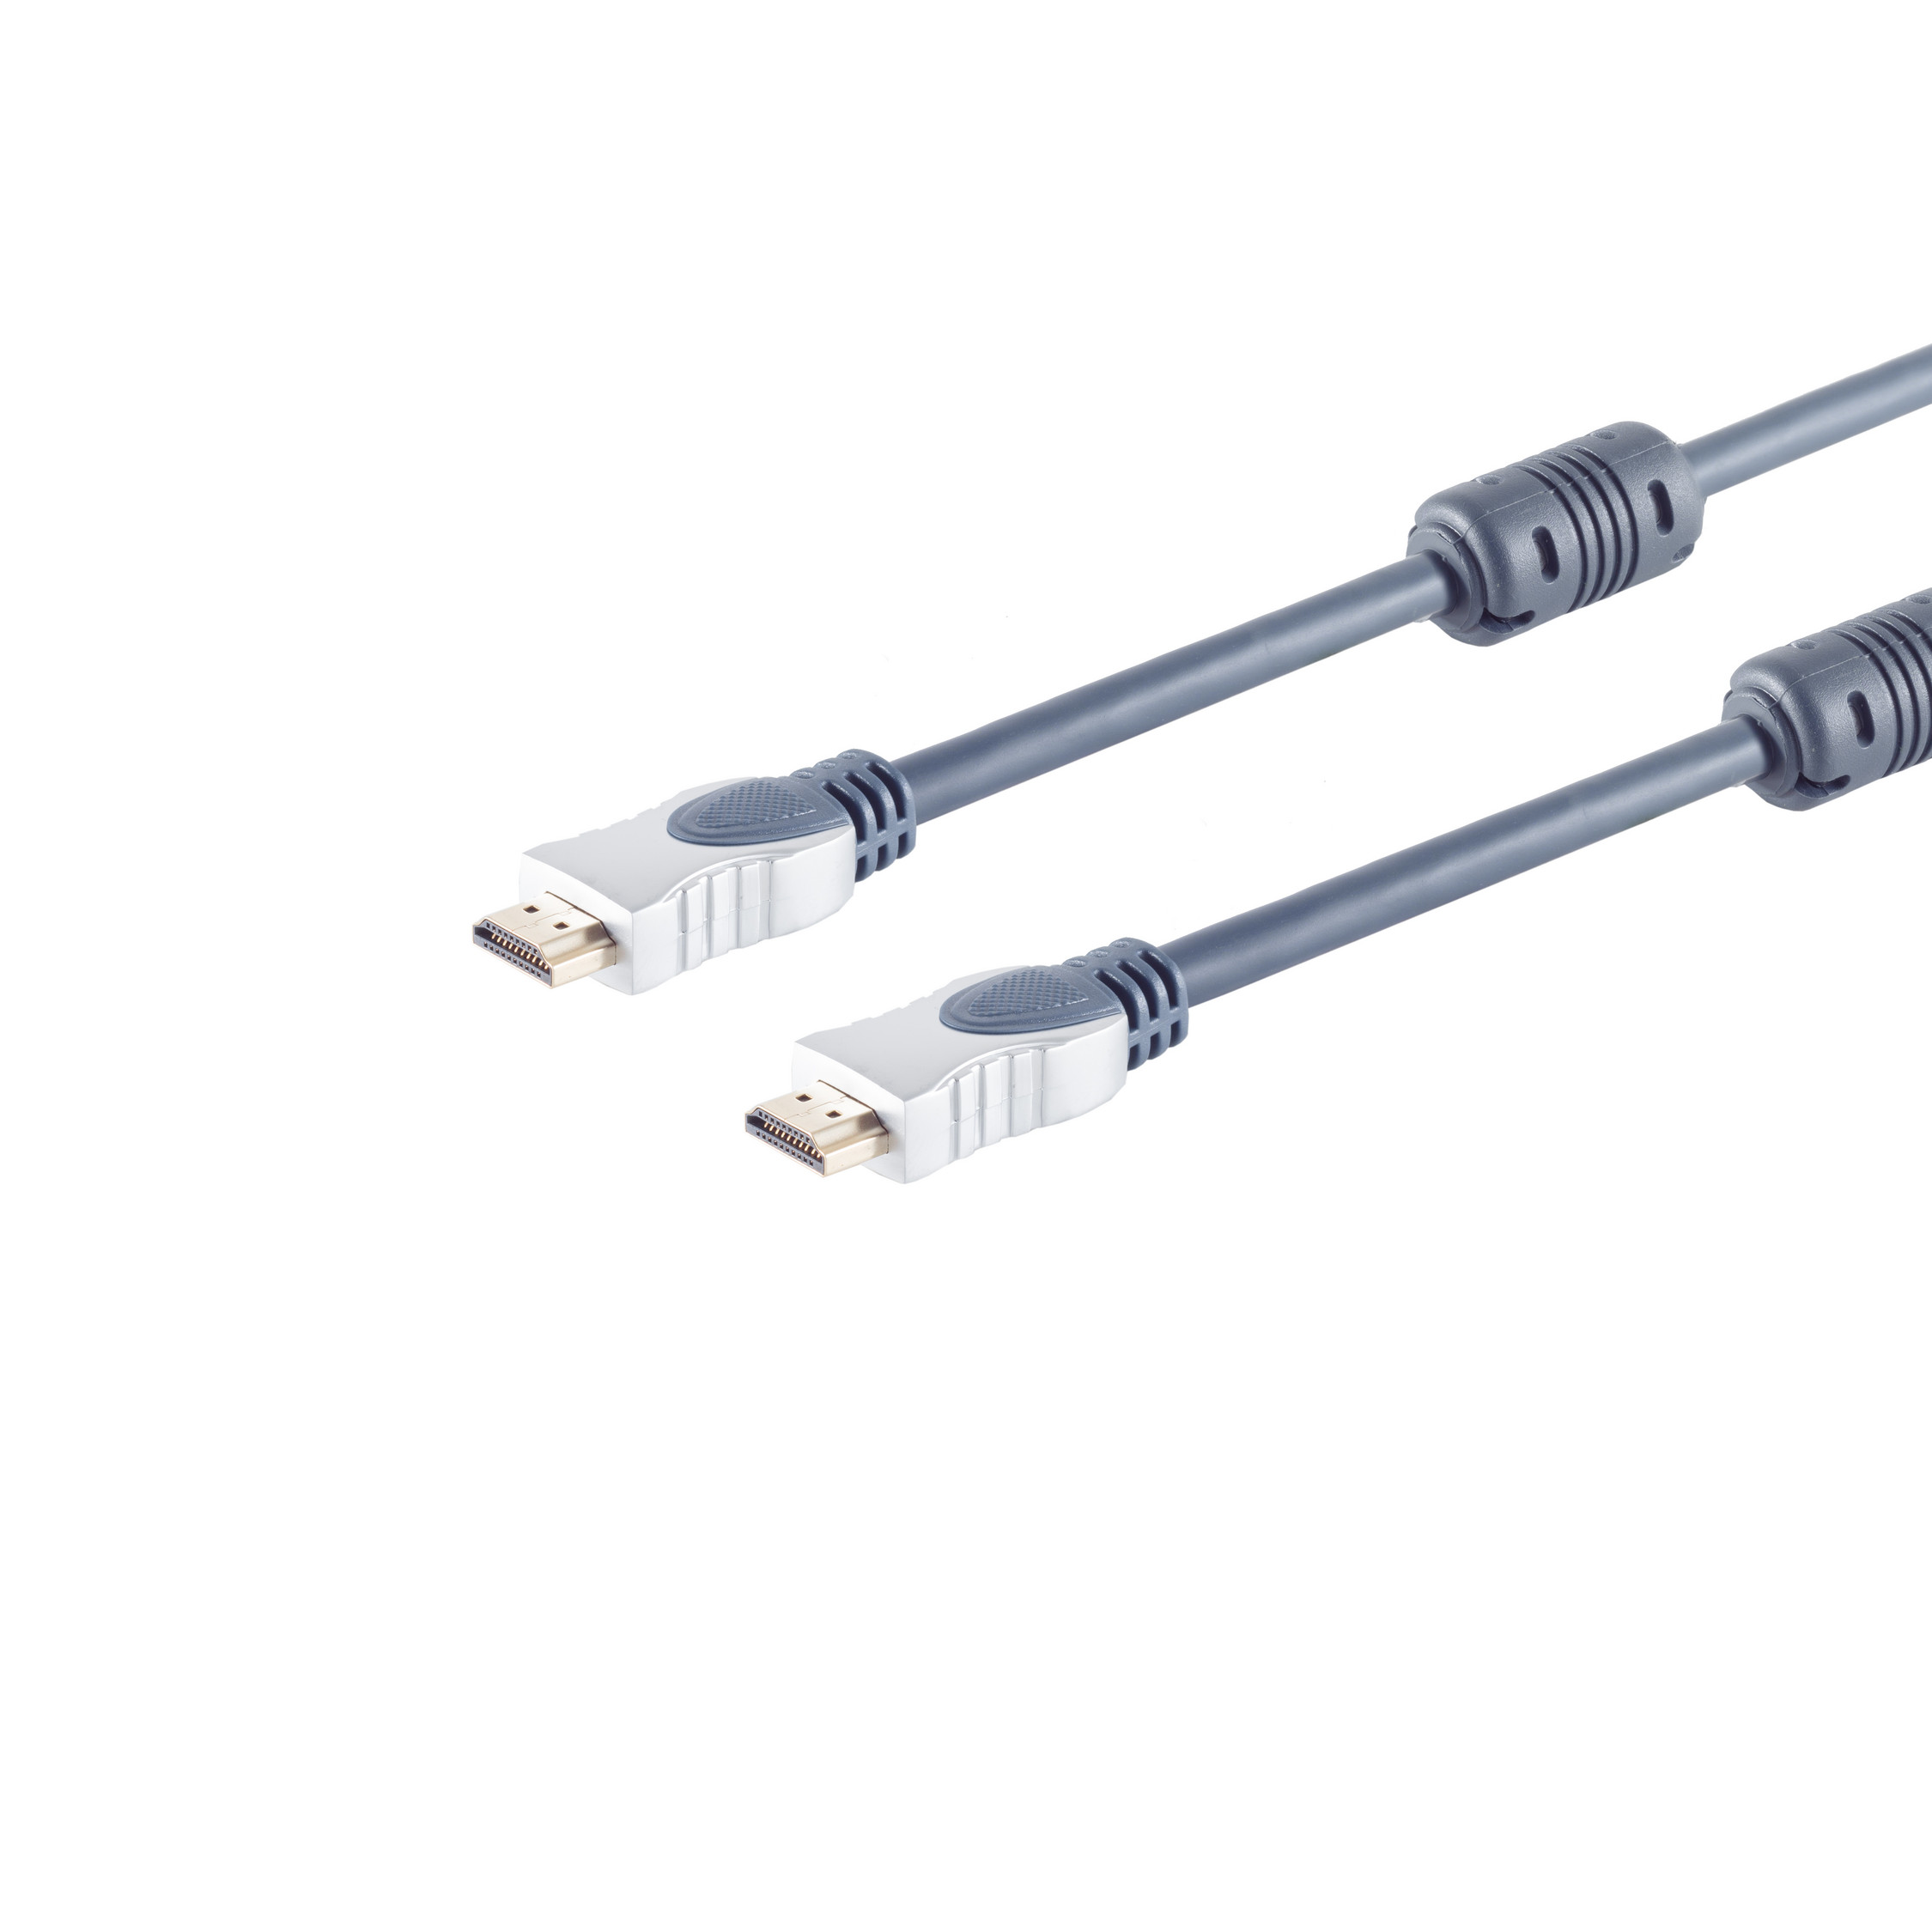 Kabel 2x Home-Cinema HDMI S/CONN MAXIMUM HDMI CONNECTIVITY Stecker, 1,0m